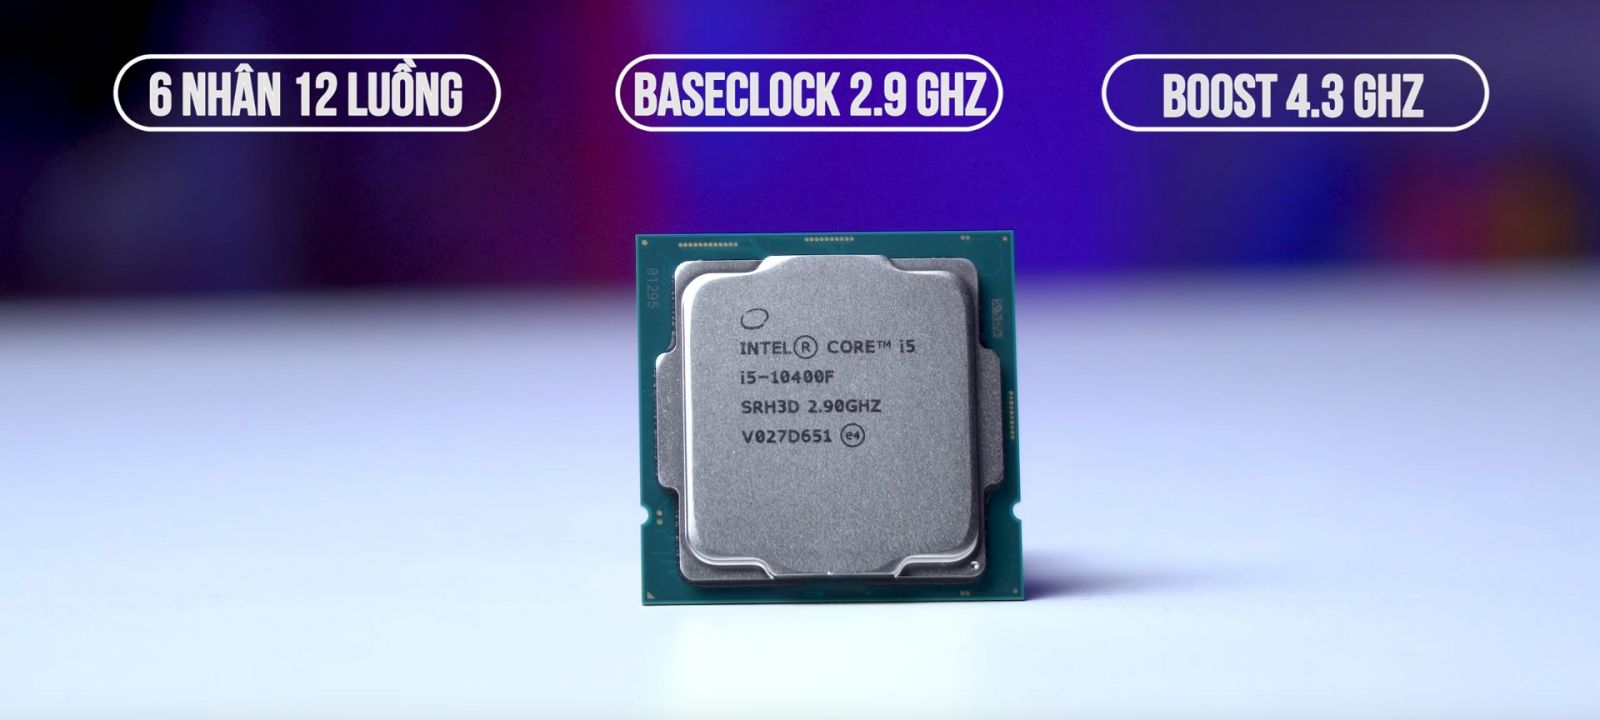 CPU Intel Core i5-10400F (2.9GHz turbo up to 4.3Ghz, 6 nhân 12 luồng, 12MB Cache, 65W)